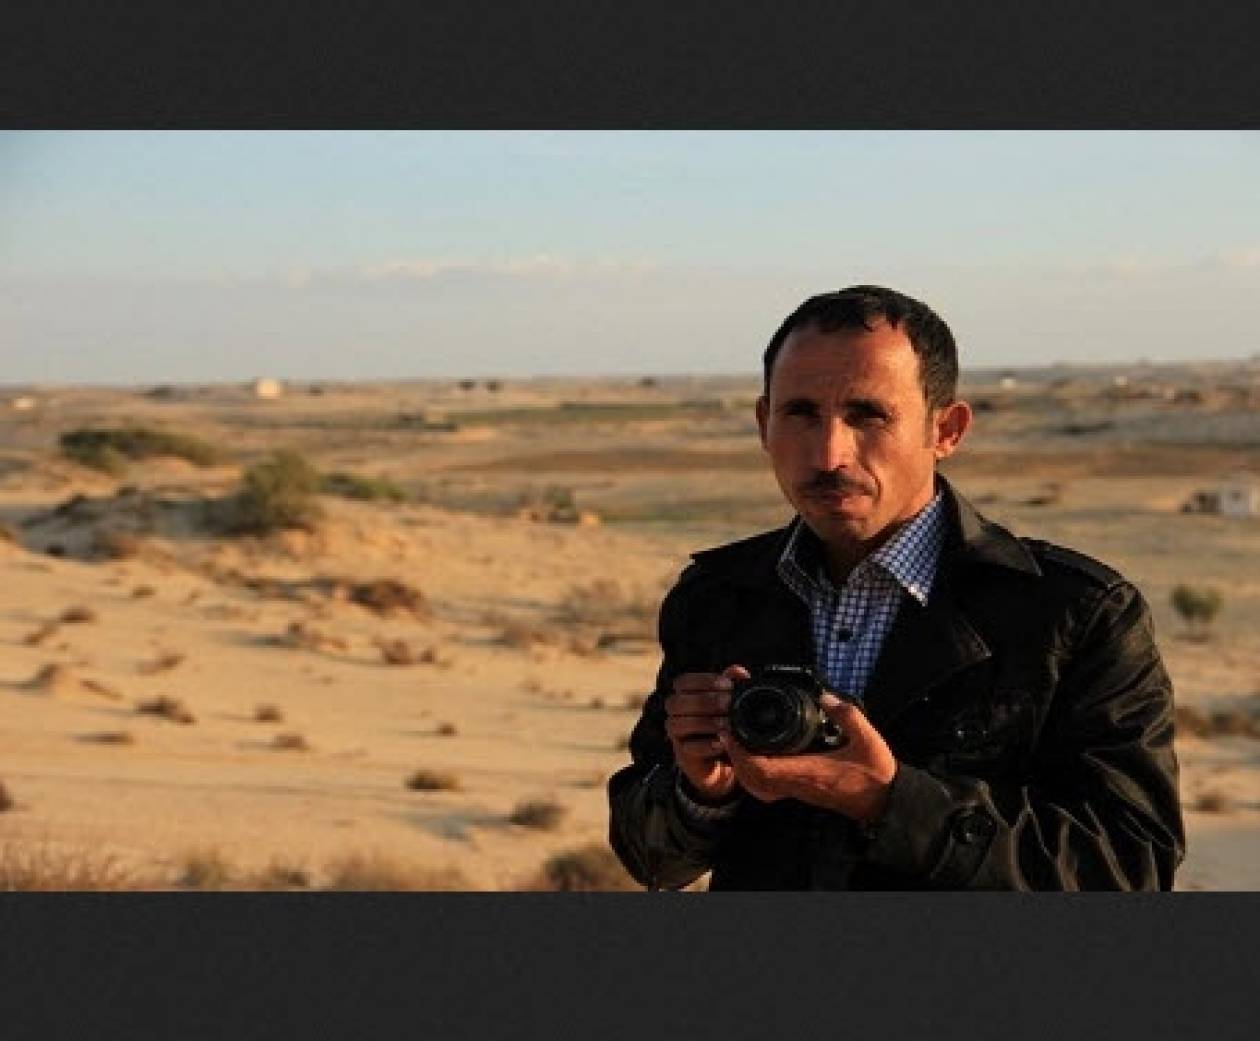 Σε στρατιωτικό δικαστήριο παραπέμφθηκε ένας δημοσιογράφος στην Αίγυπτο